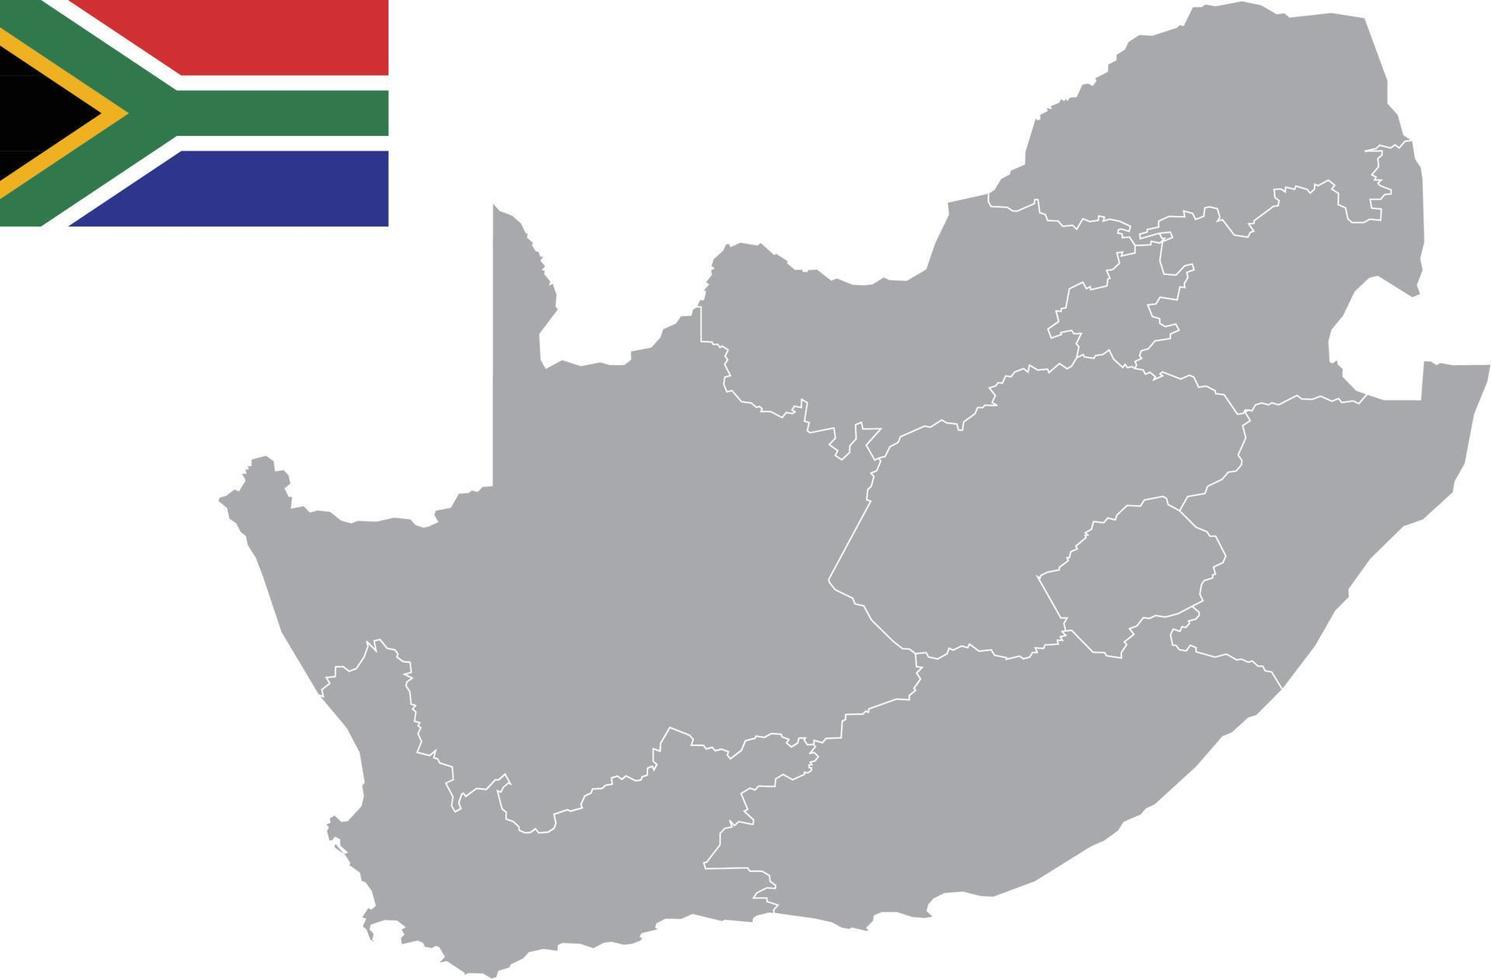 mapa da áfrica do sul. bandeira da áfrica do sul. ilustração em vetor símbolo ícone plano